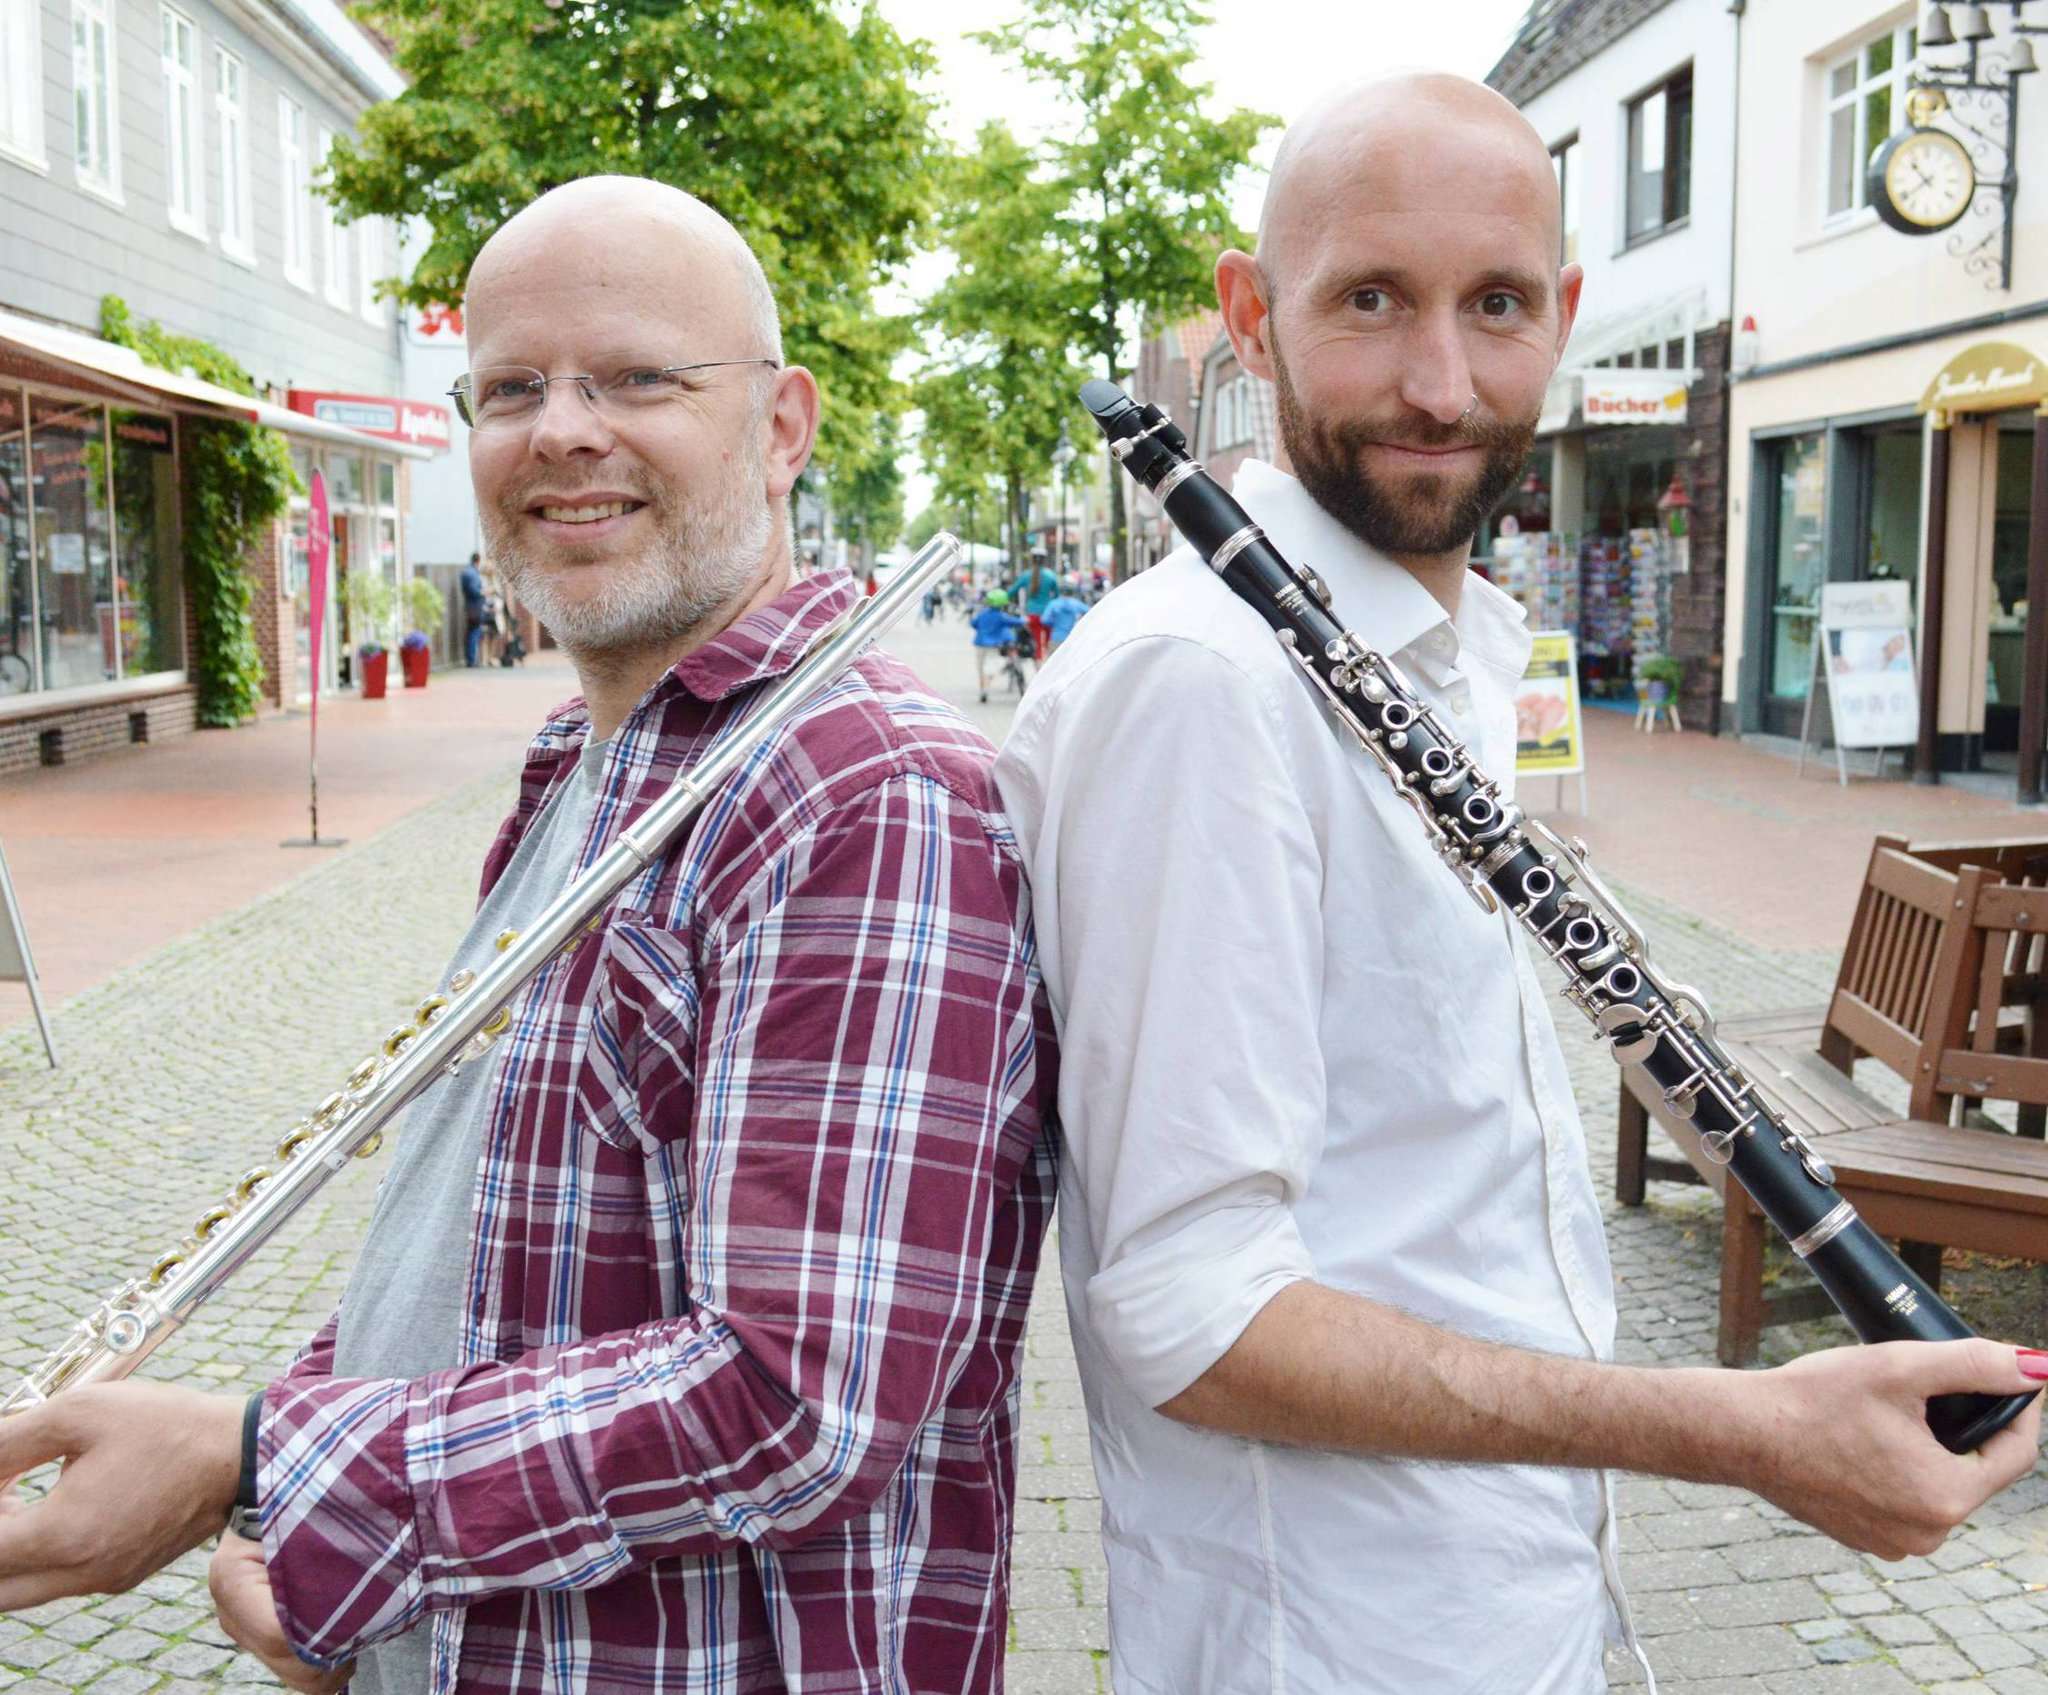 Klarinette und Querflöte, geschultert und bereit: Das sind nur zwei der Instrumente, die Ralf Linders (links) und Benjamin Faber noch im Ensemble von 